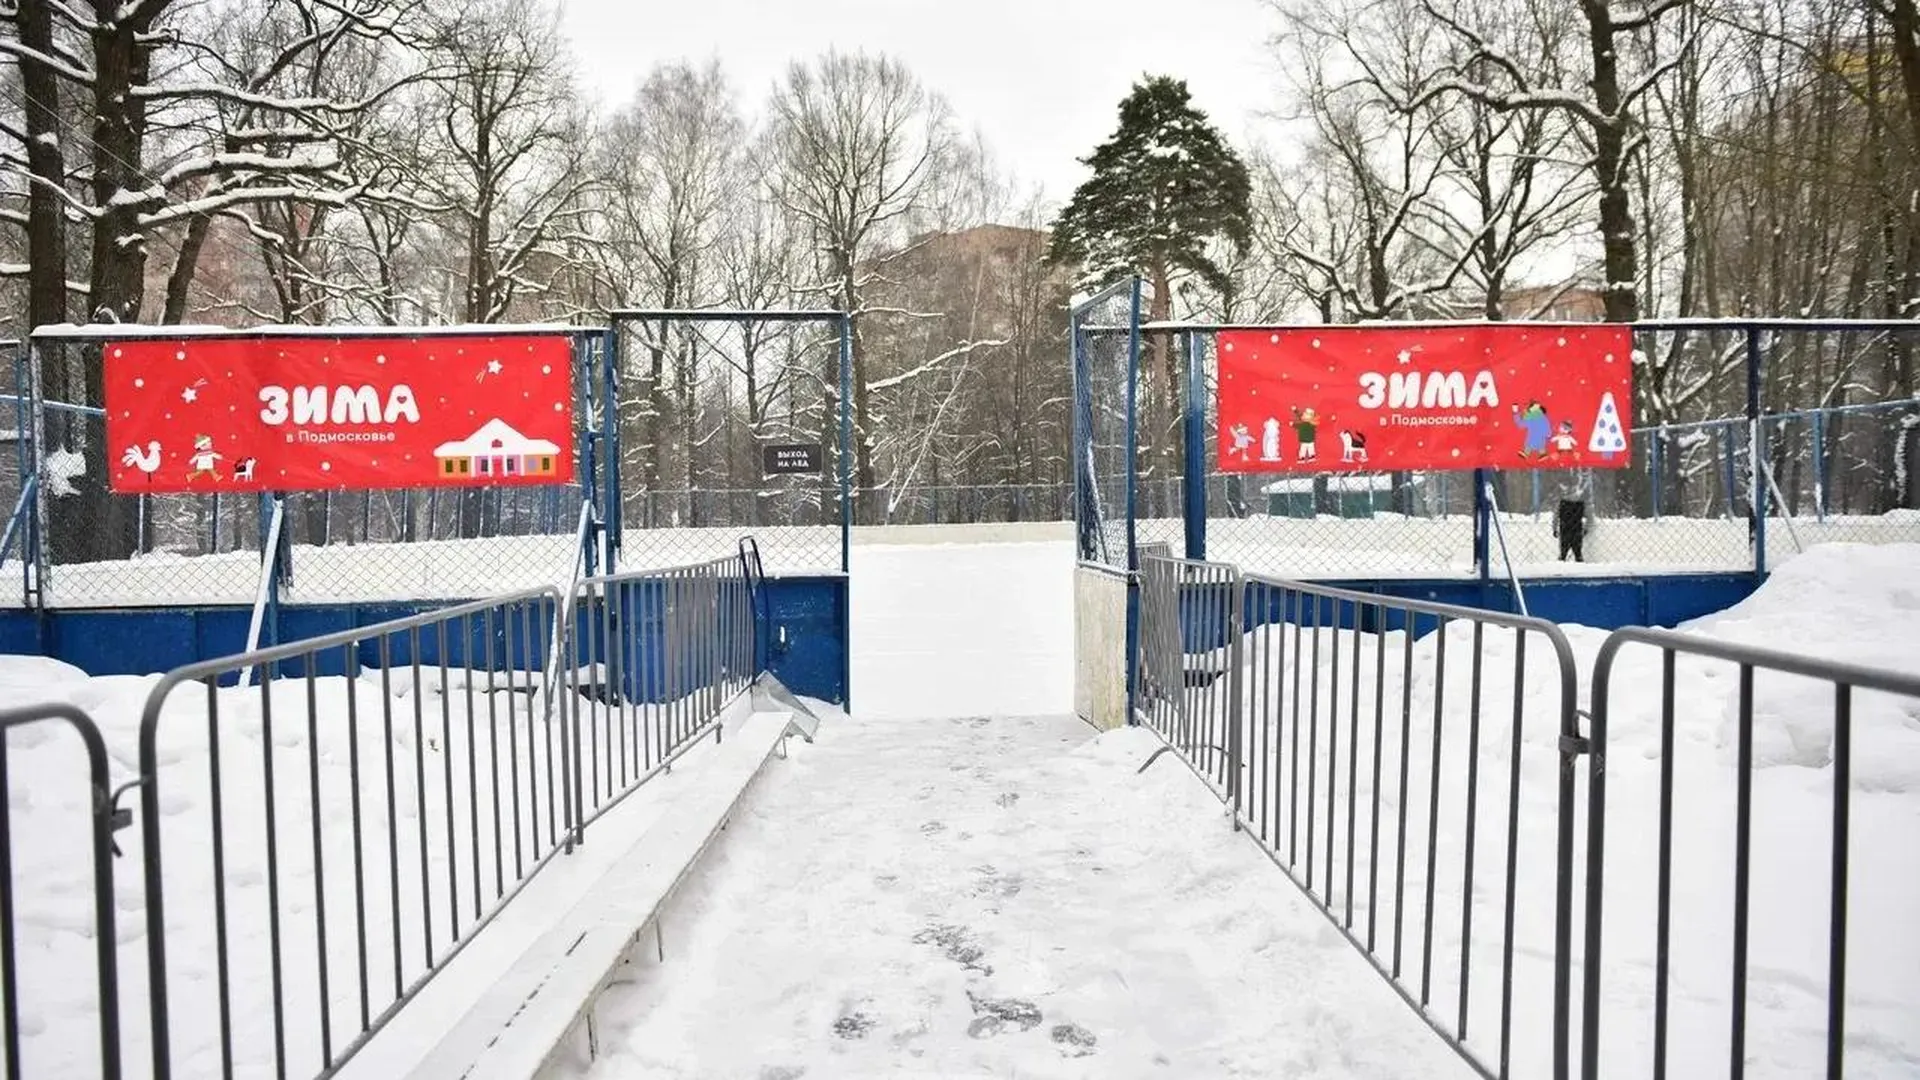 Каток с натуральным льдом заработал в парке Толстого в Химках